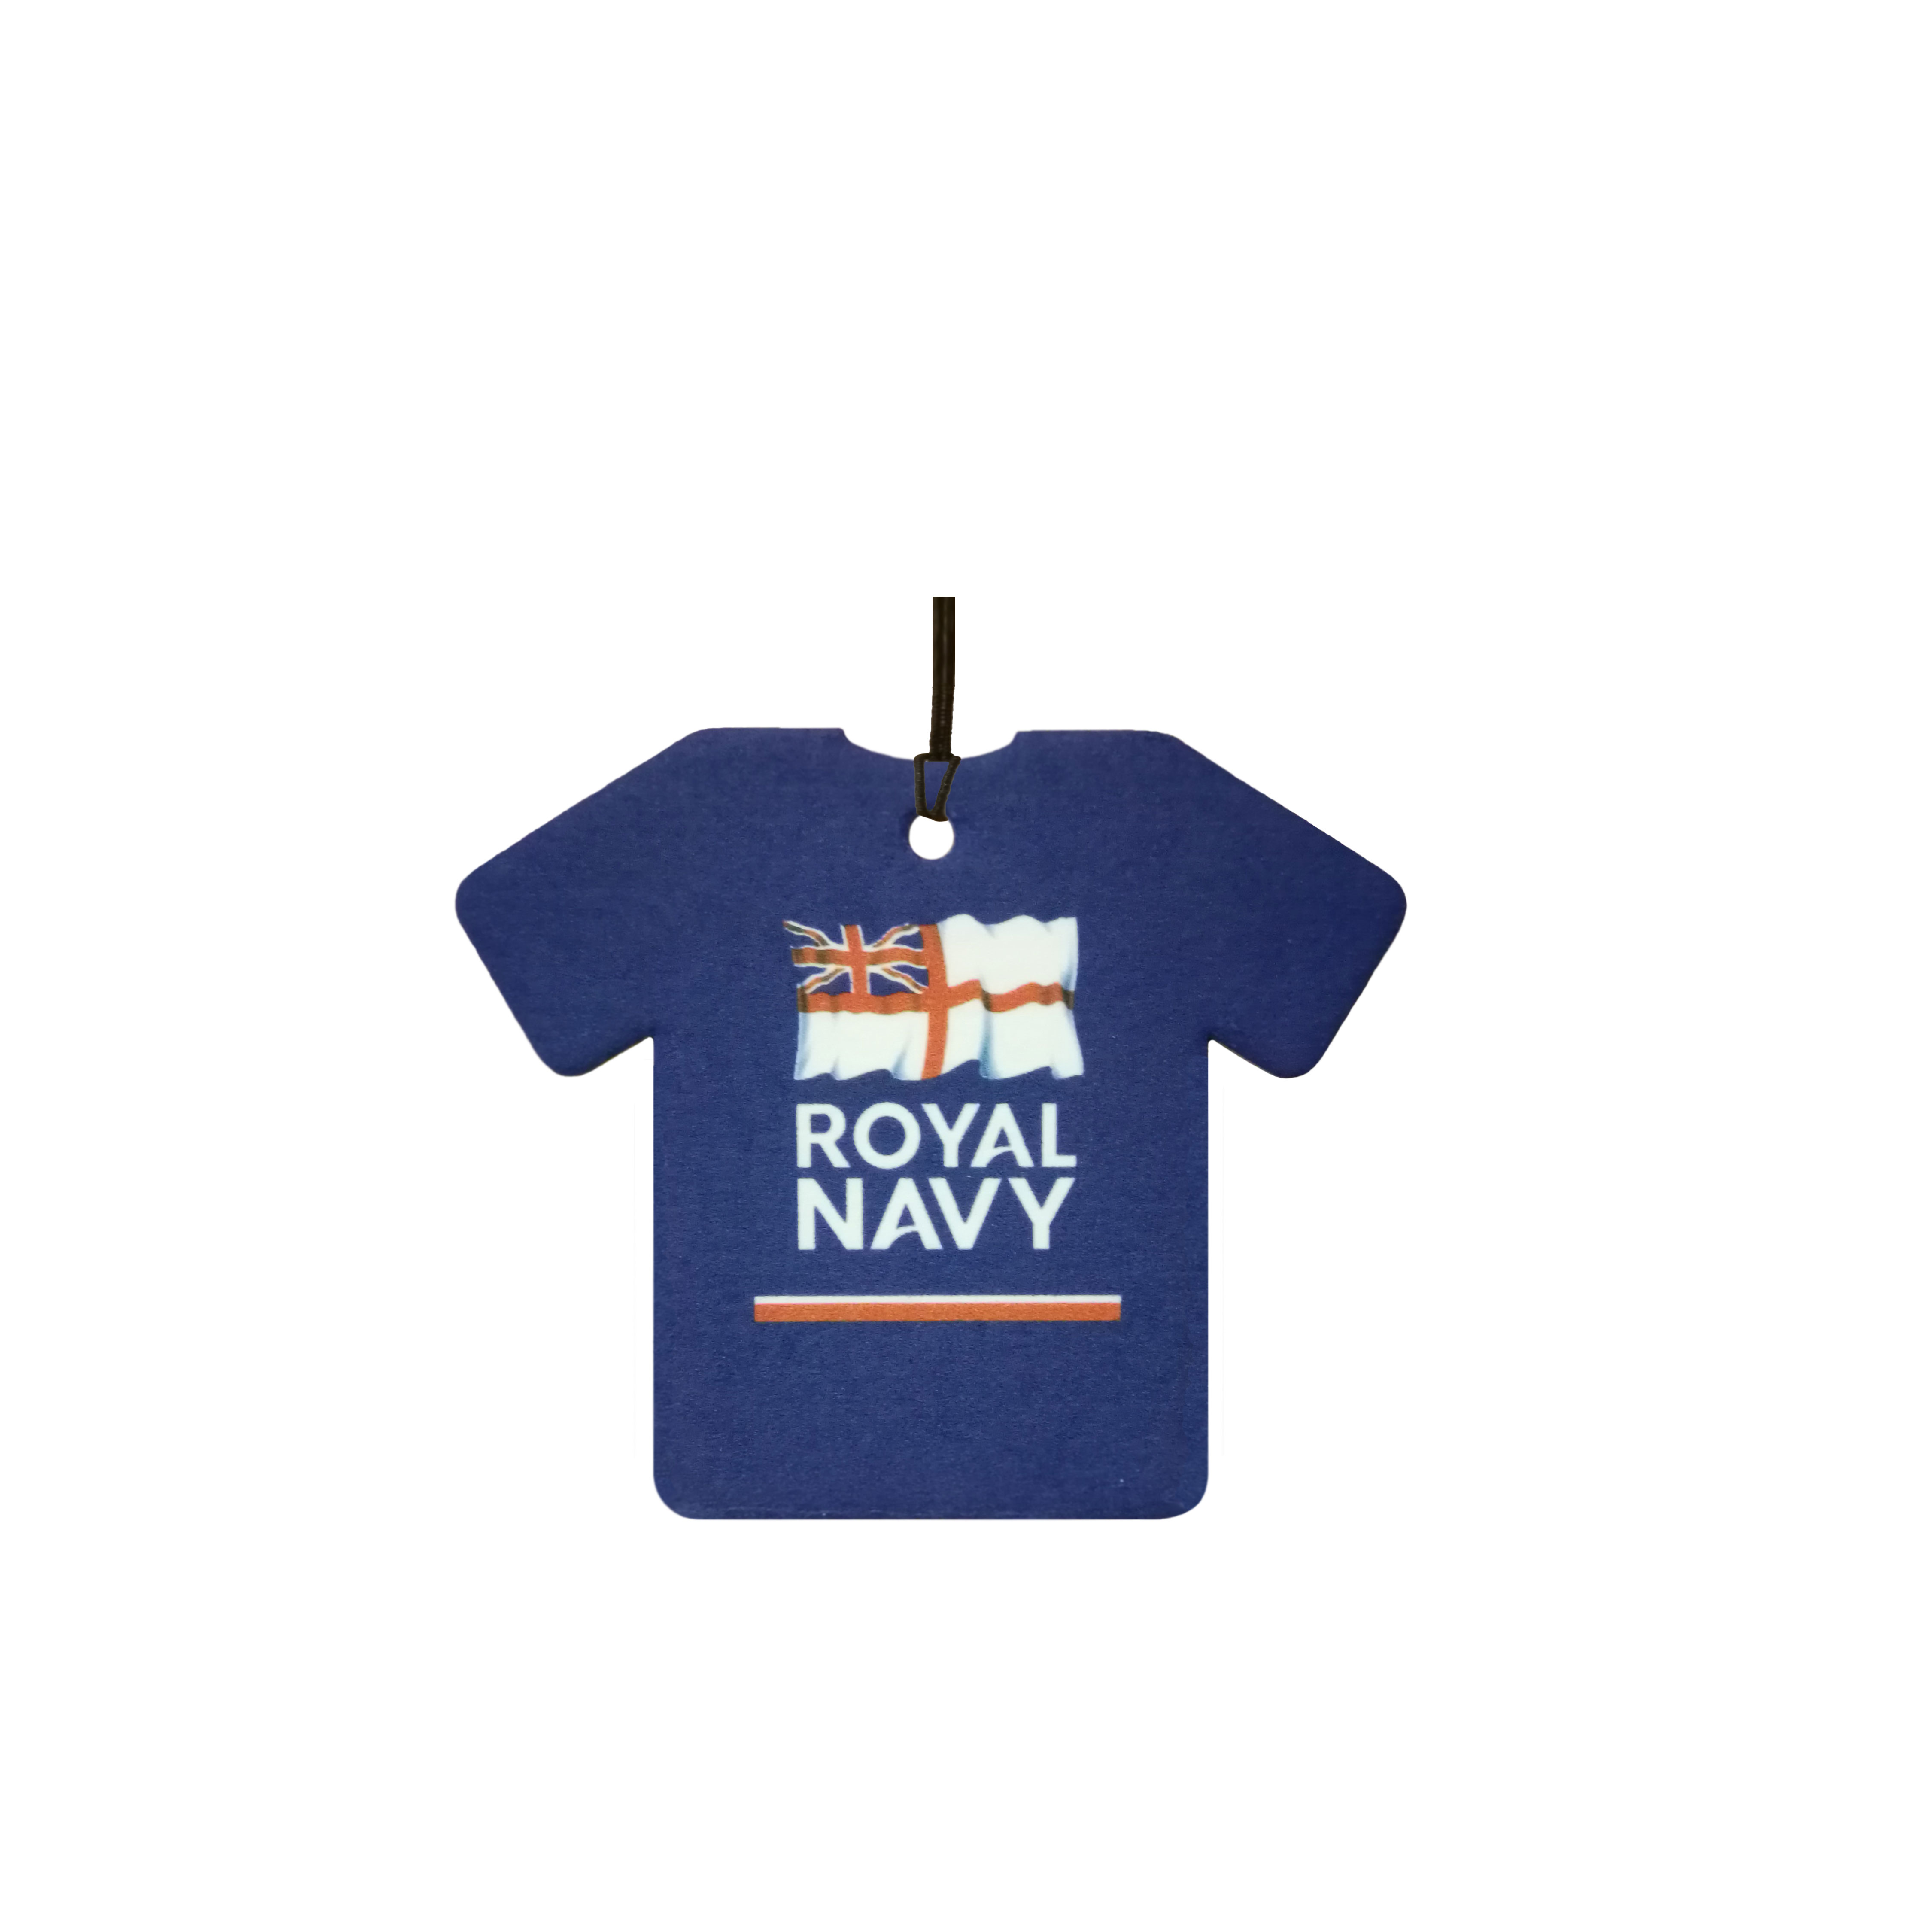 Personalised Royal Navy Shirt